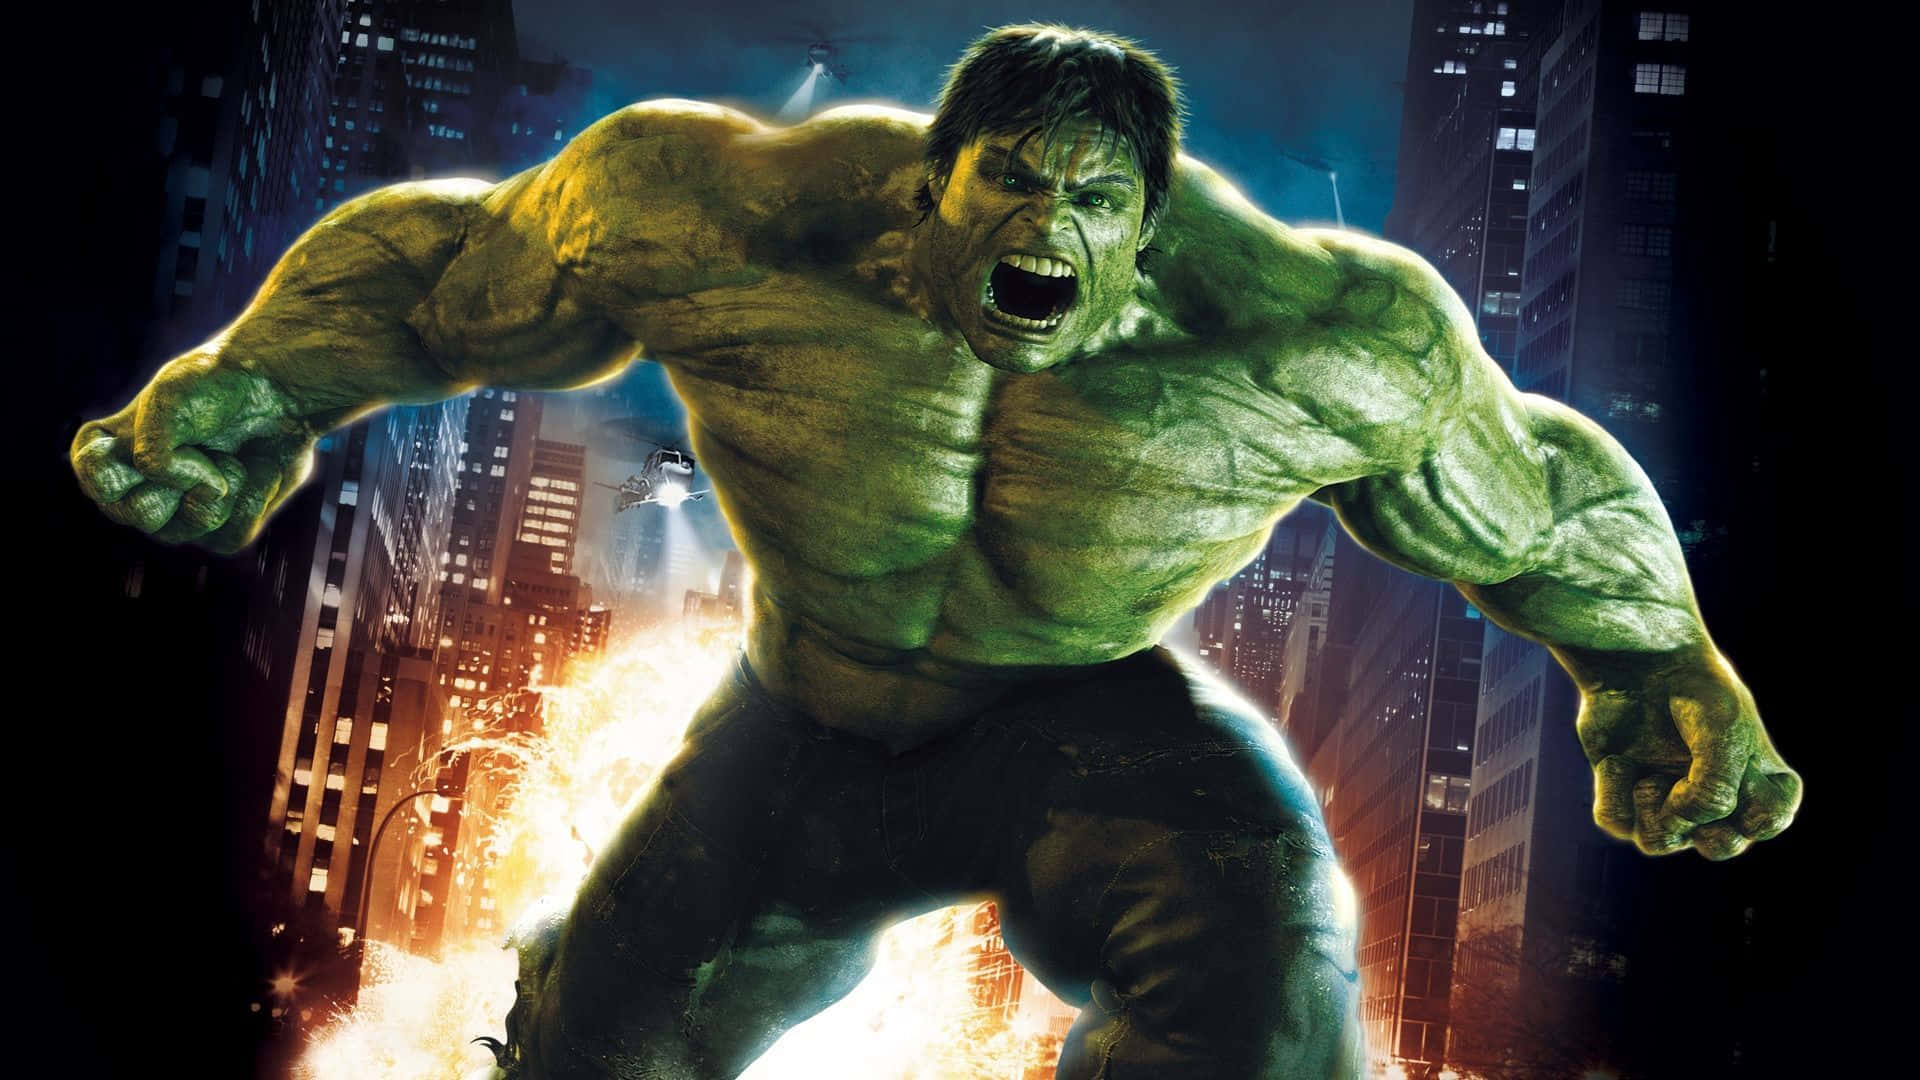 Derunglaubliche Hulk, Der Durch Eine Wand Bricht.